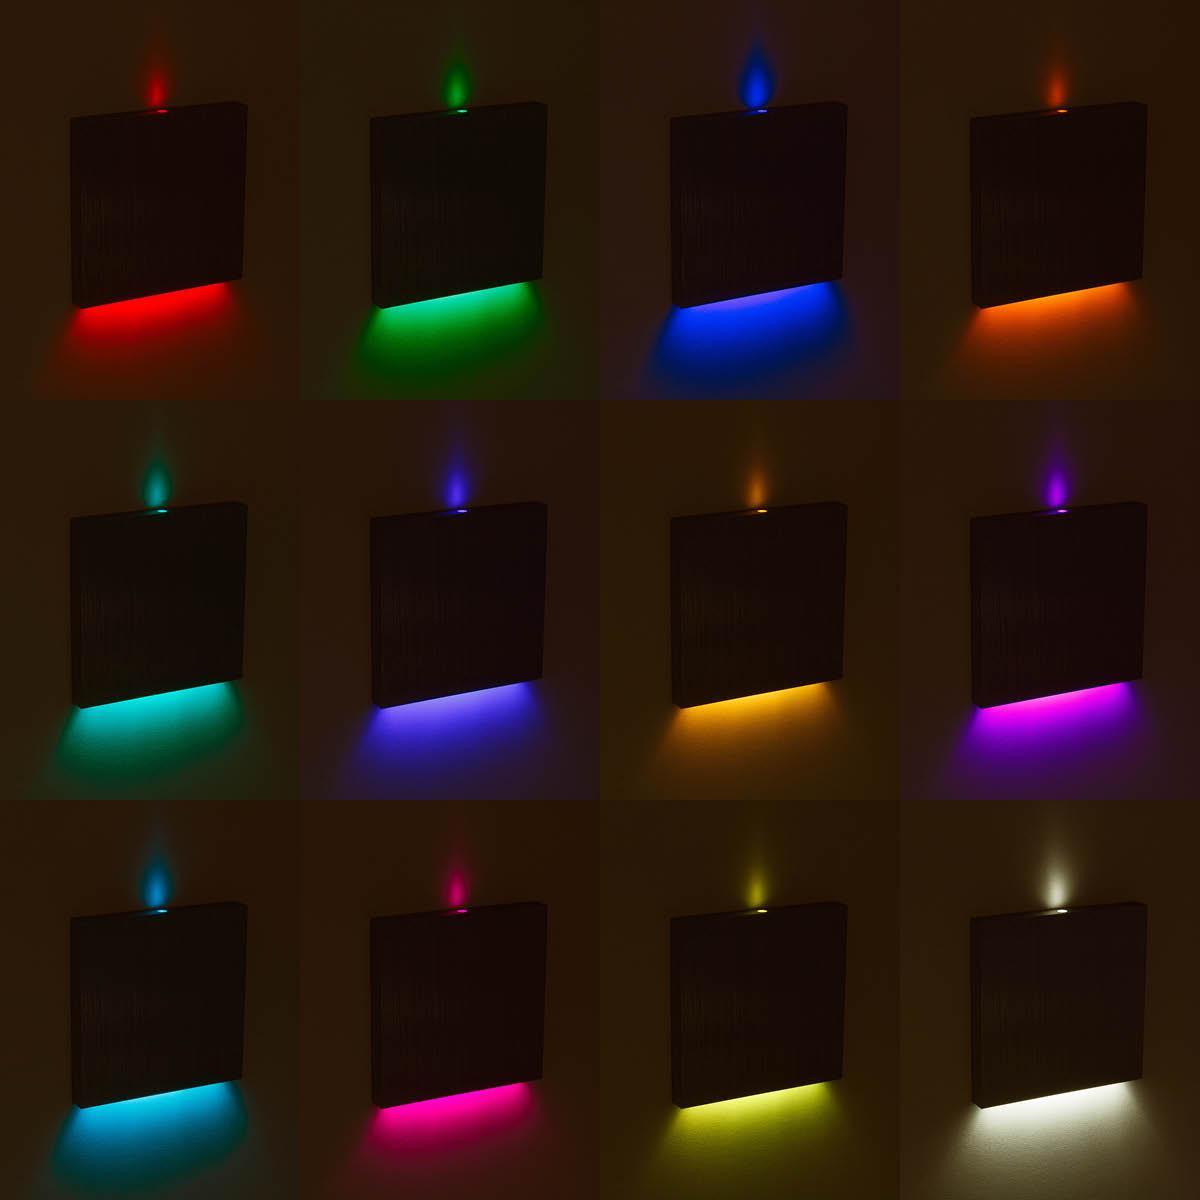 LED Treppenbeleuchtung 230V Wandeinbauleuchte eckig Alu-gebürstet - Unterteil Lichtfarbe: RGB Warmweiß 3W - Lichtaustritt: Luga